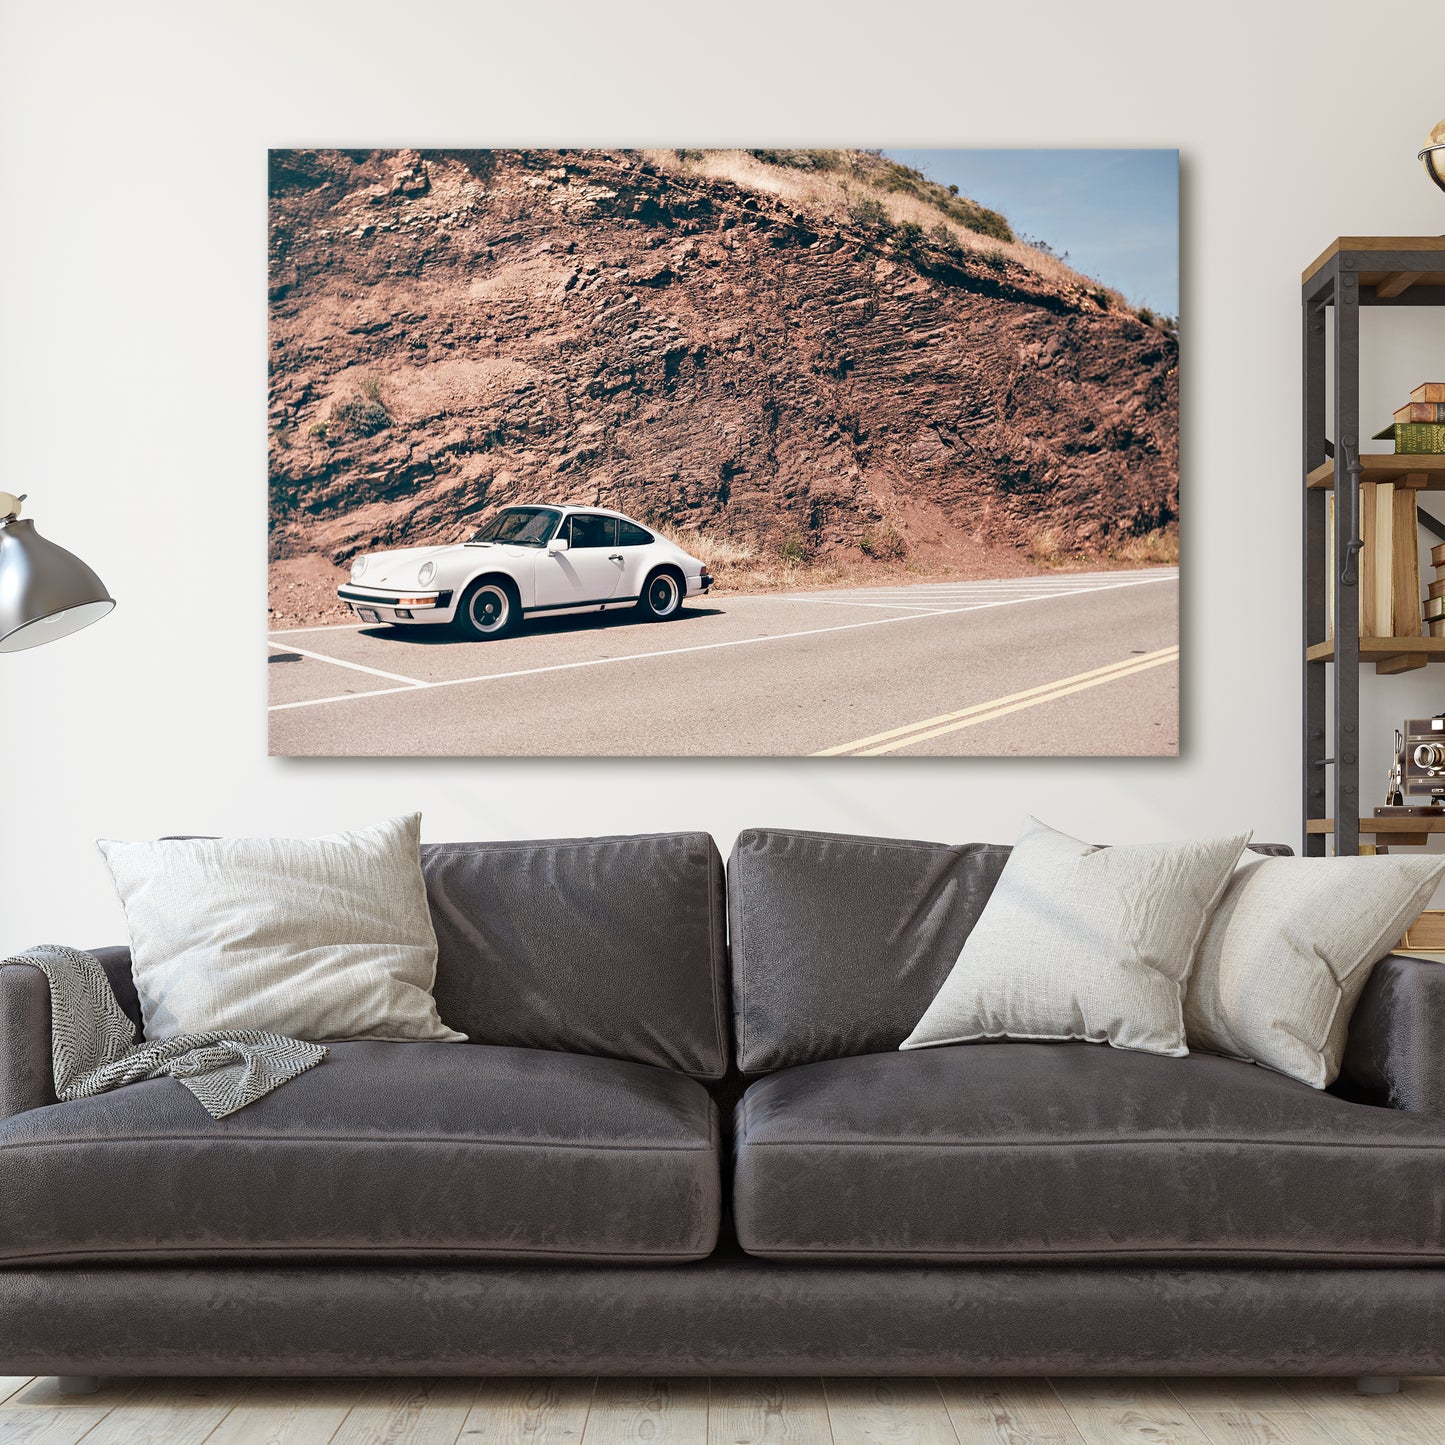 Porsche 911 In The Desert